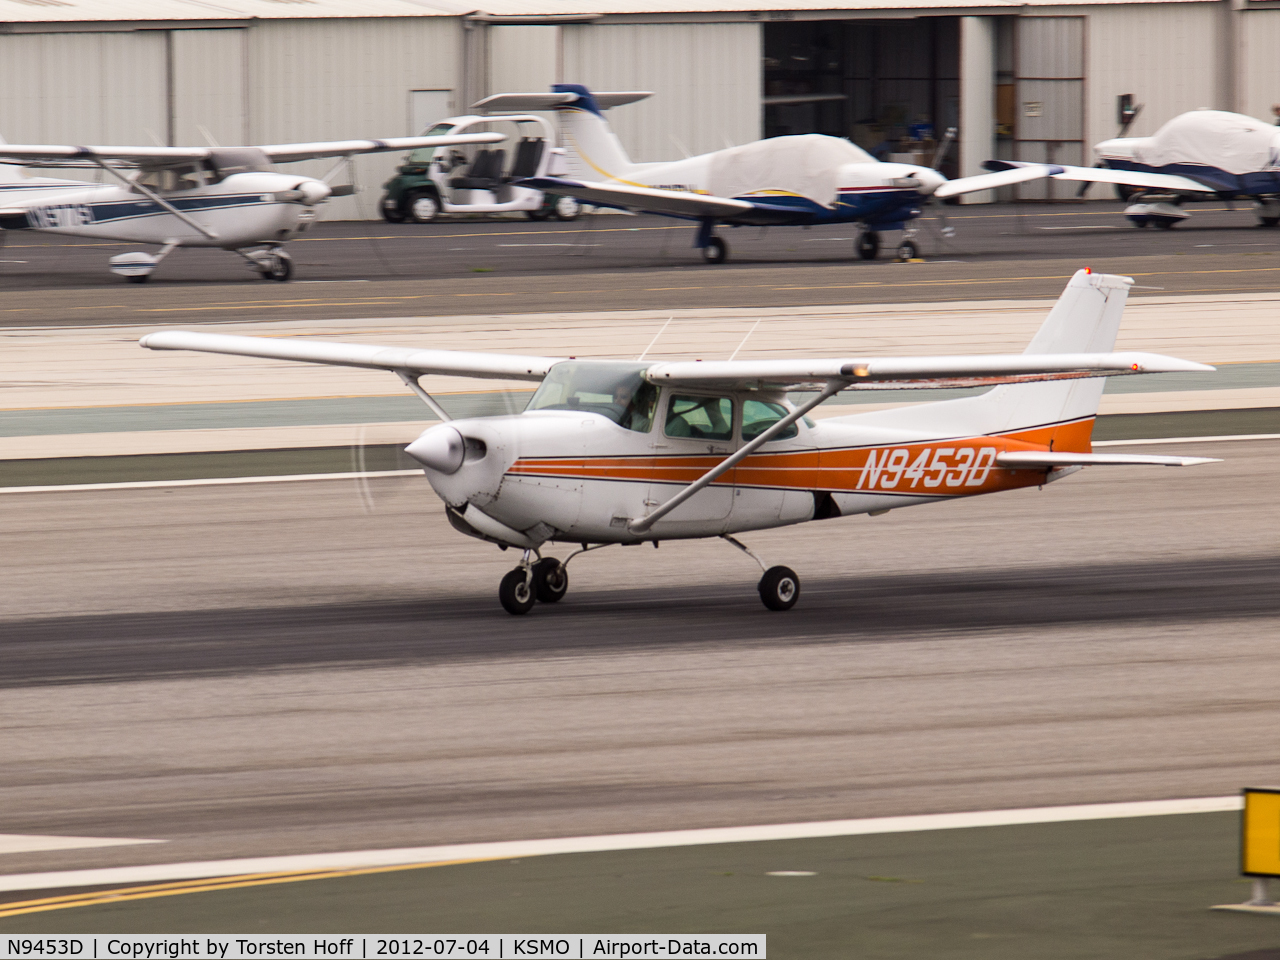 N9453D, 1984 Cessna 172RG Cutlass RG C/N 172RG1169, N9453D departing from RWY 21